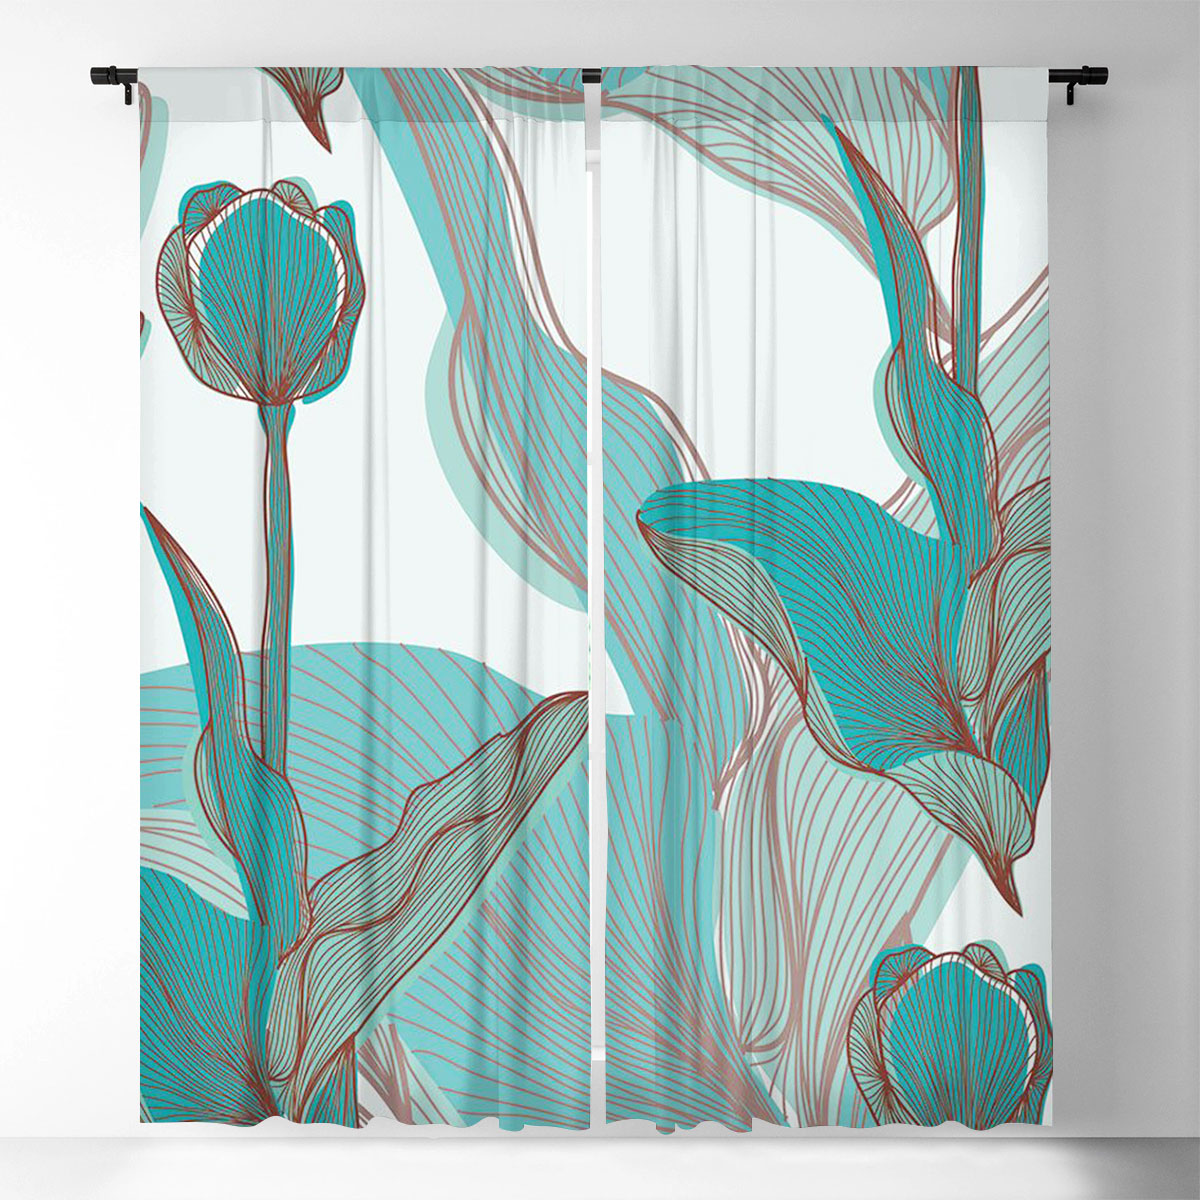 Abstract Tulip Window Curtain